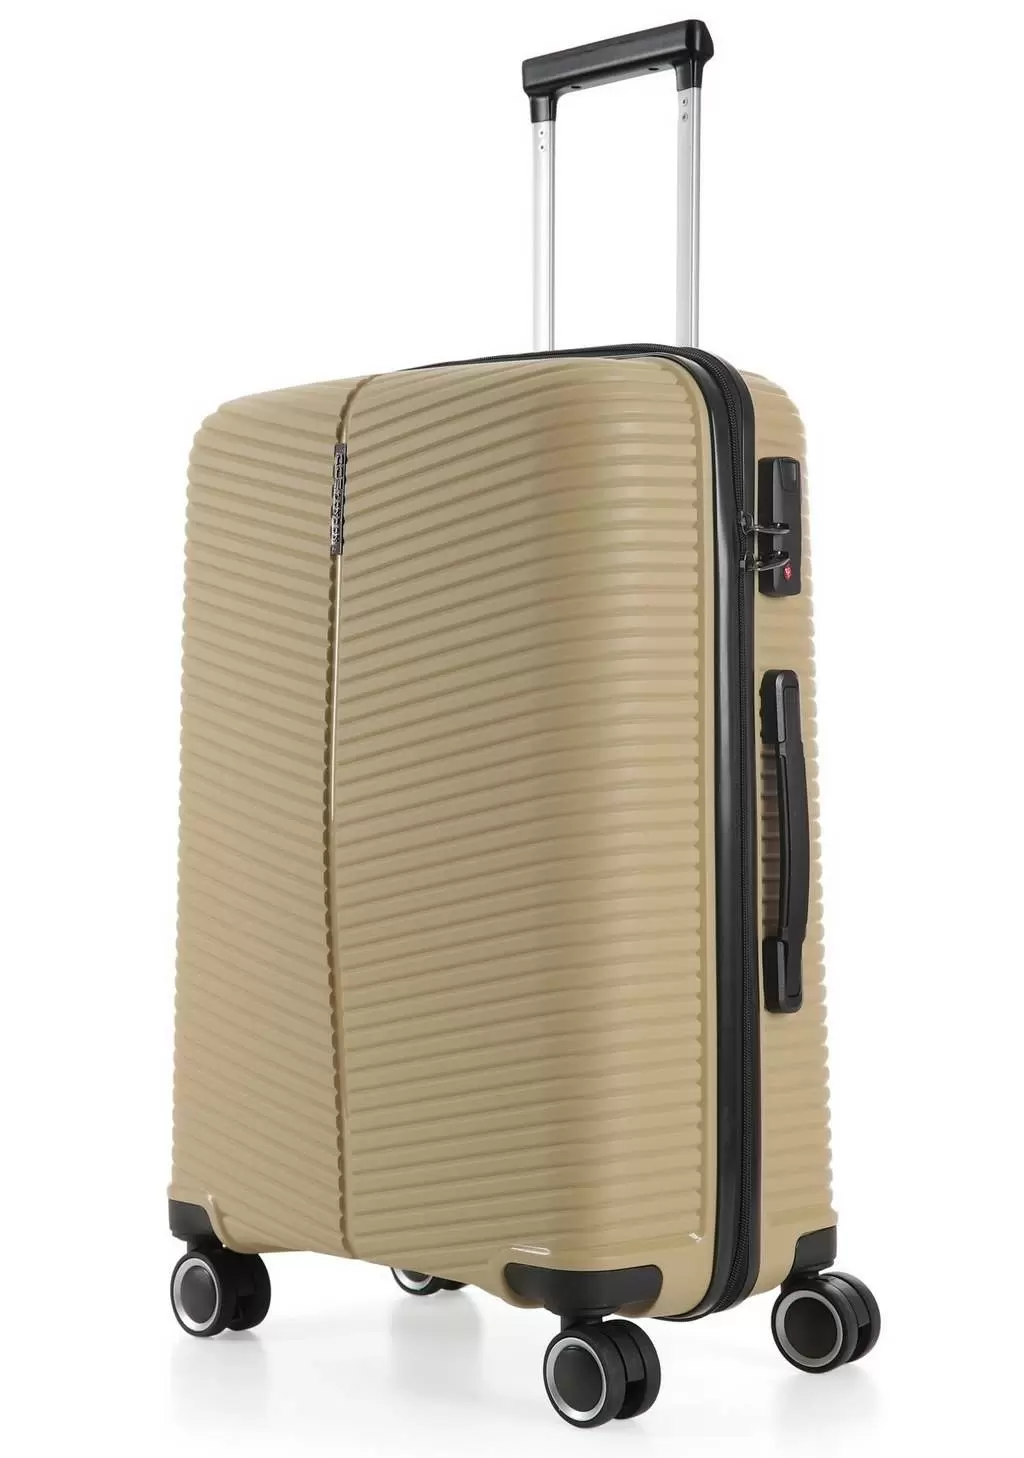 Комплект чемоданов CCS 5224 Set, бежевый